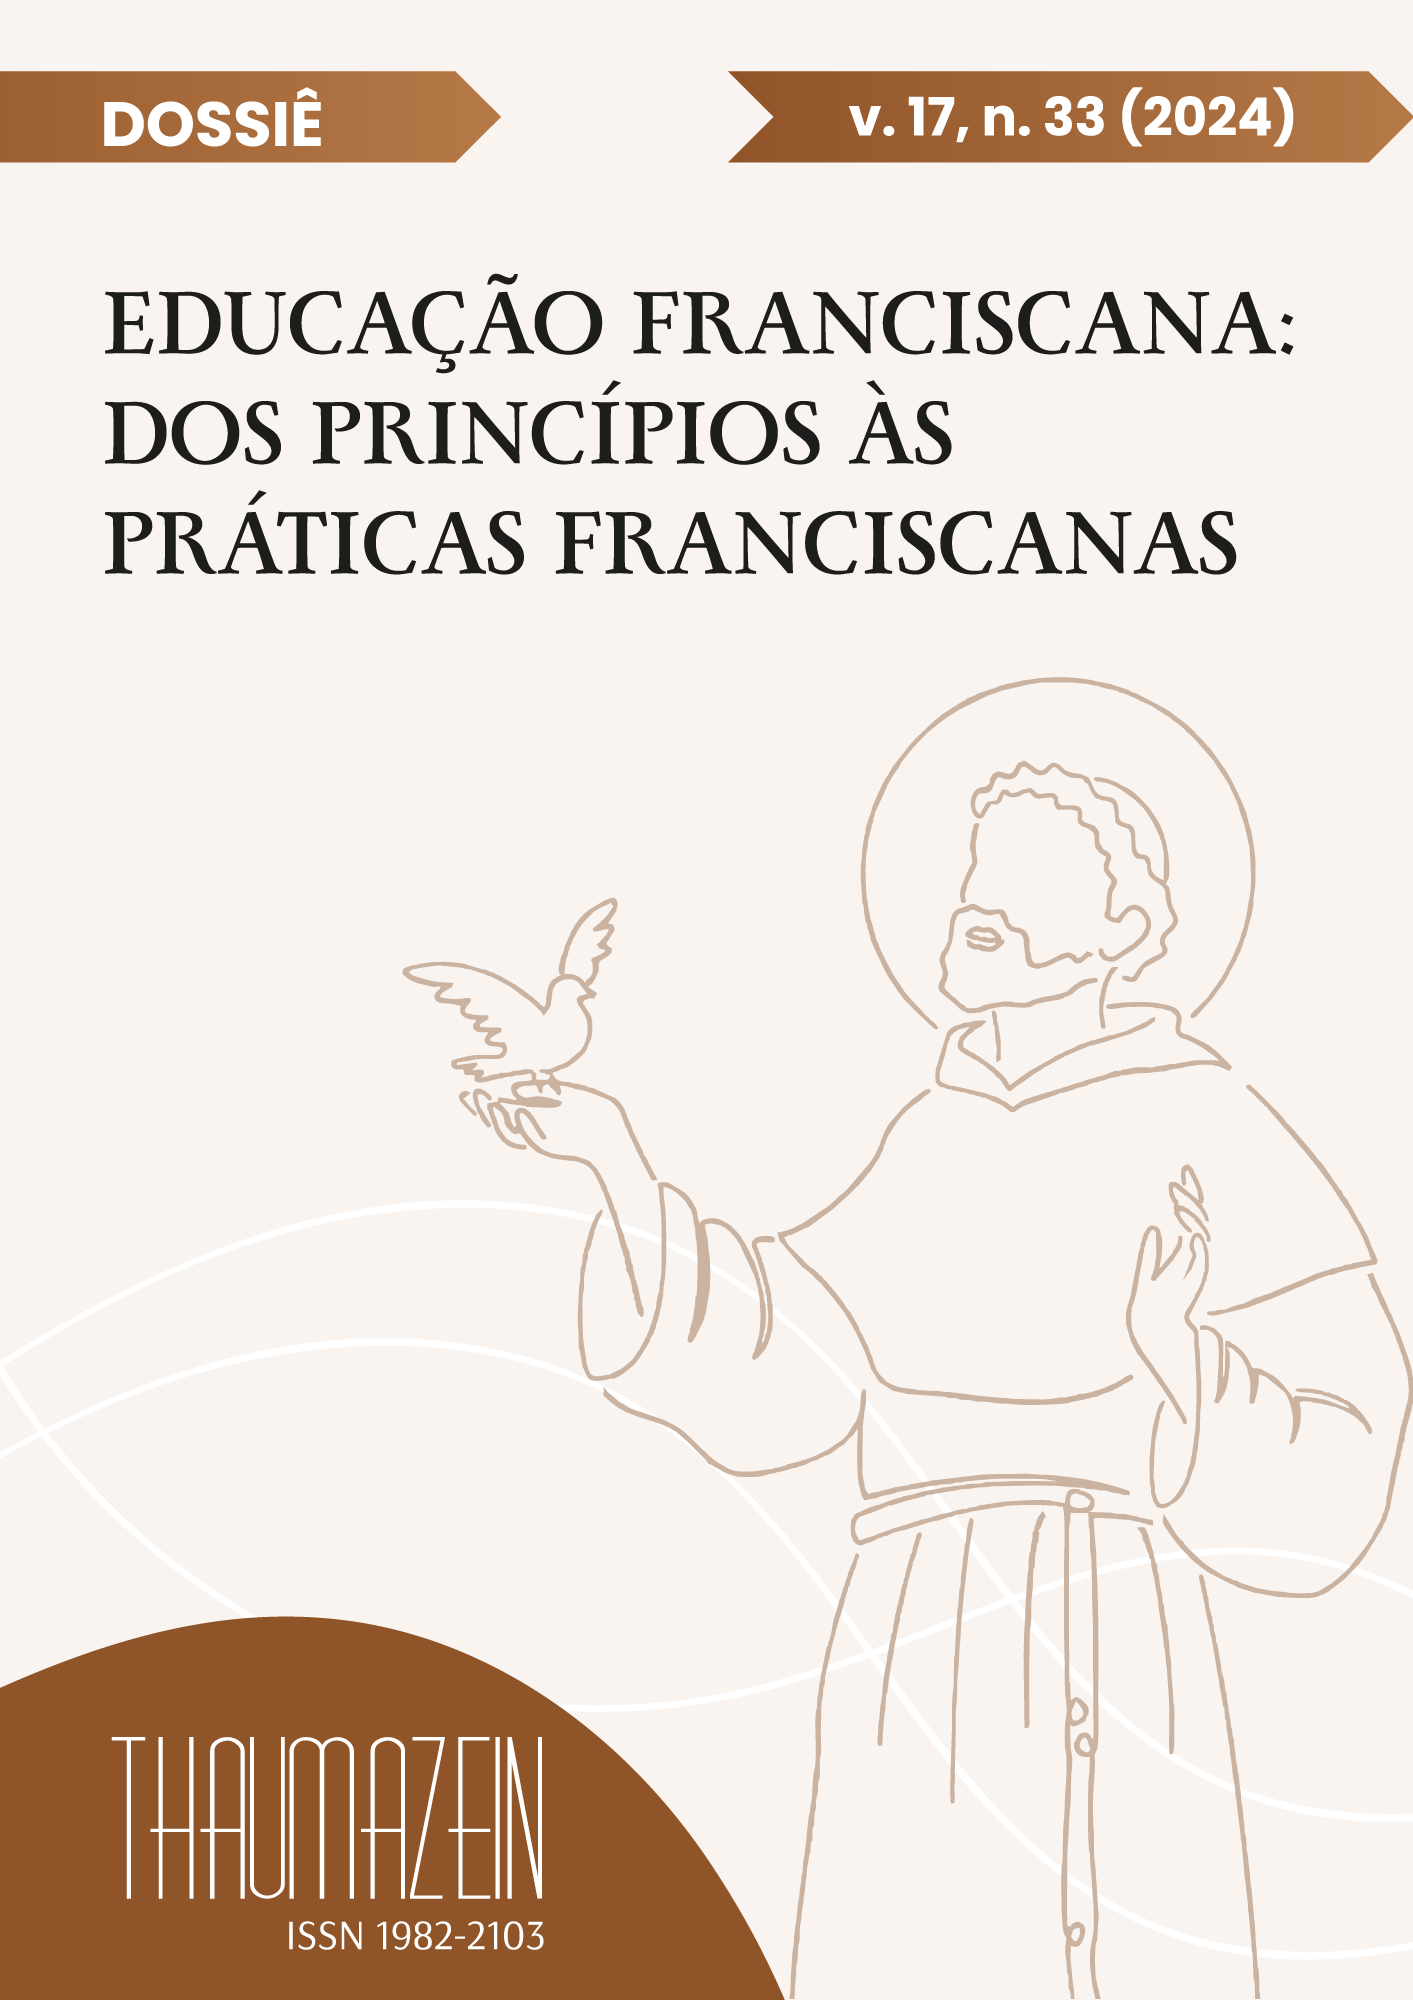 					View Vol. 17 No. 33 (2024): Dossiê: Educação Franciscana: dos princípios às práticas
				